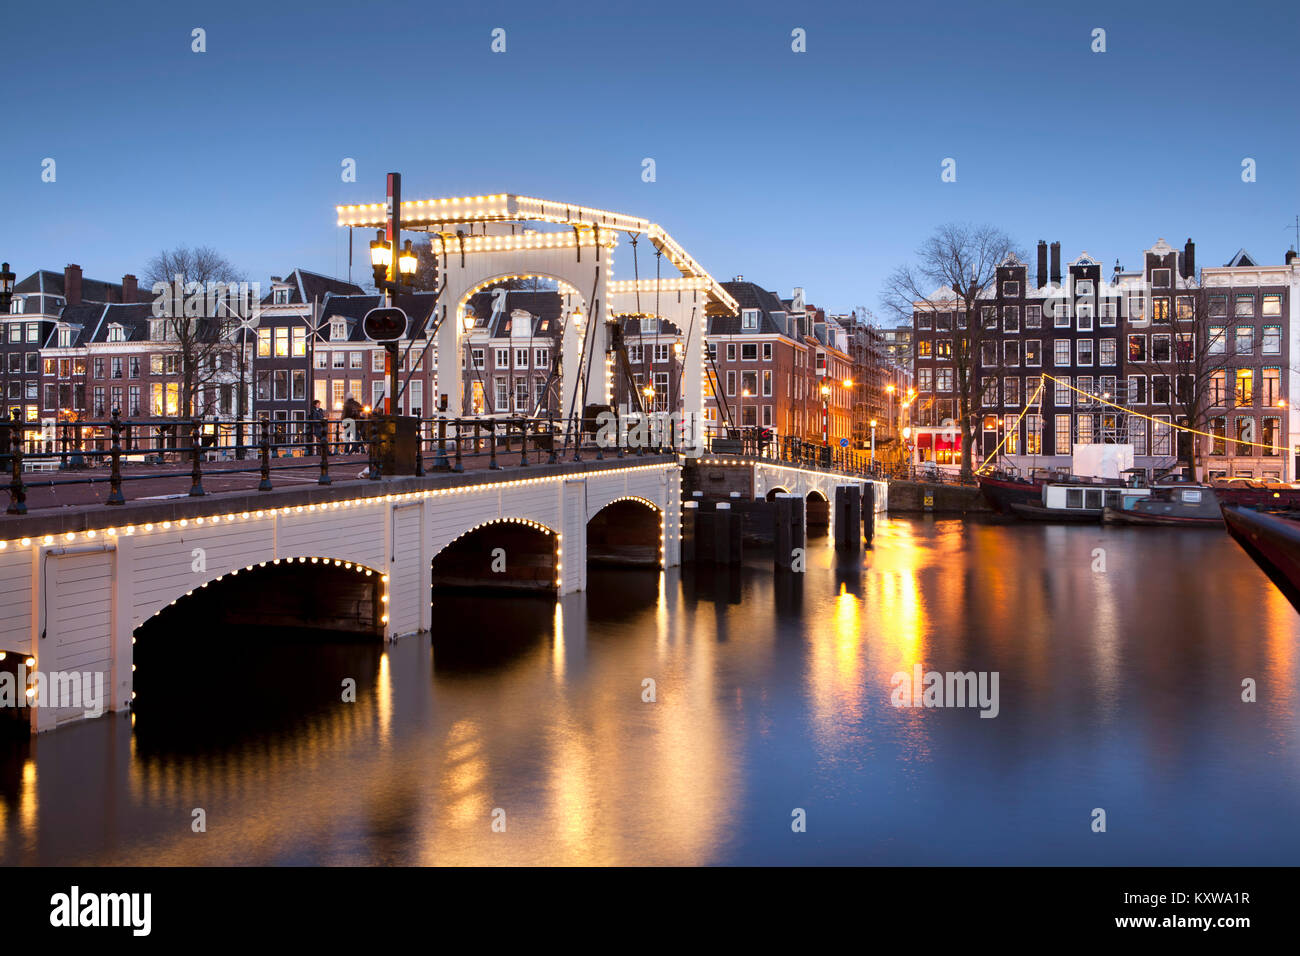 Les Pays-Bas, Amsterdam, Maisons du xviie siècle à rivière appelée Amstel. Unesco World Heritage Site. Pont maigre en arrière-plan. Le crépuscule. Banque D'Images